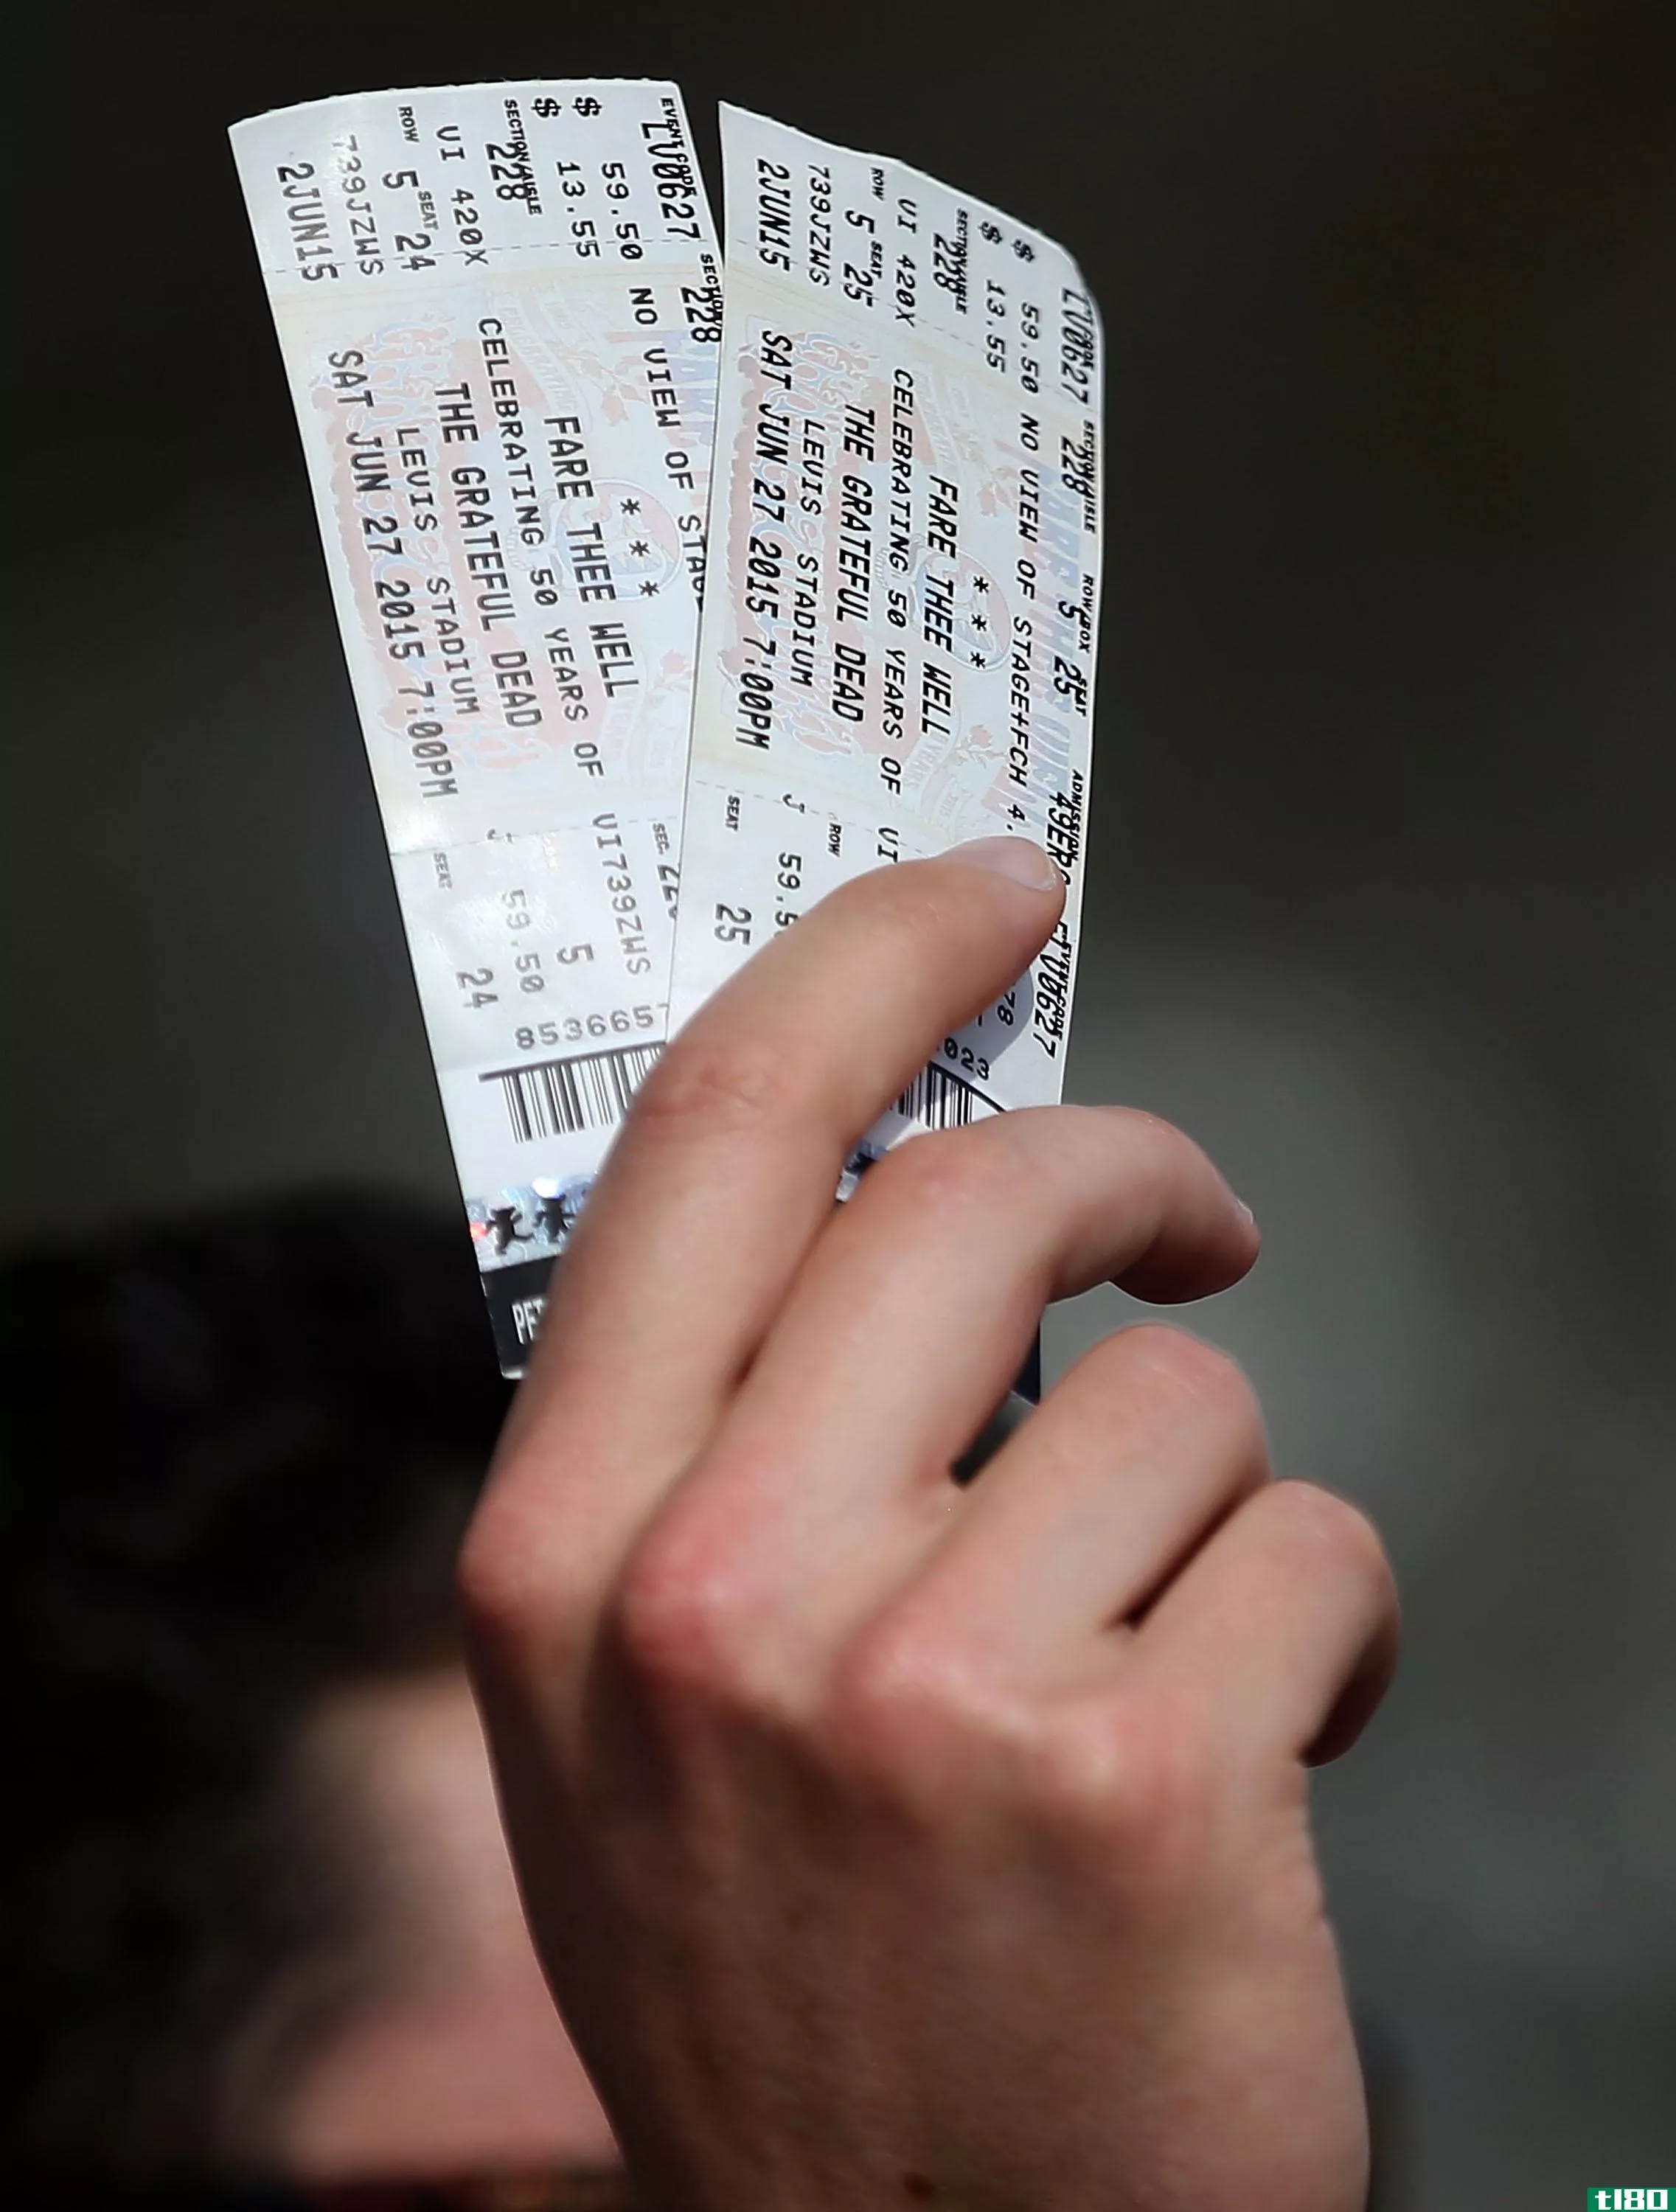 潘多拉花了4.5亿美元进入销售音乐会门票的市场